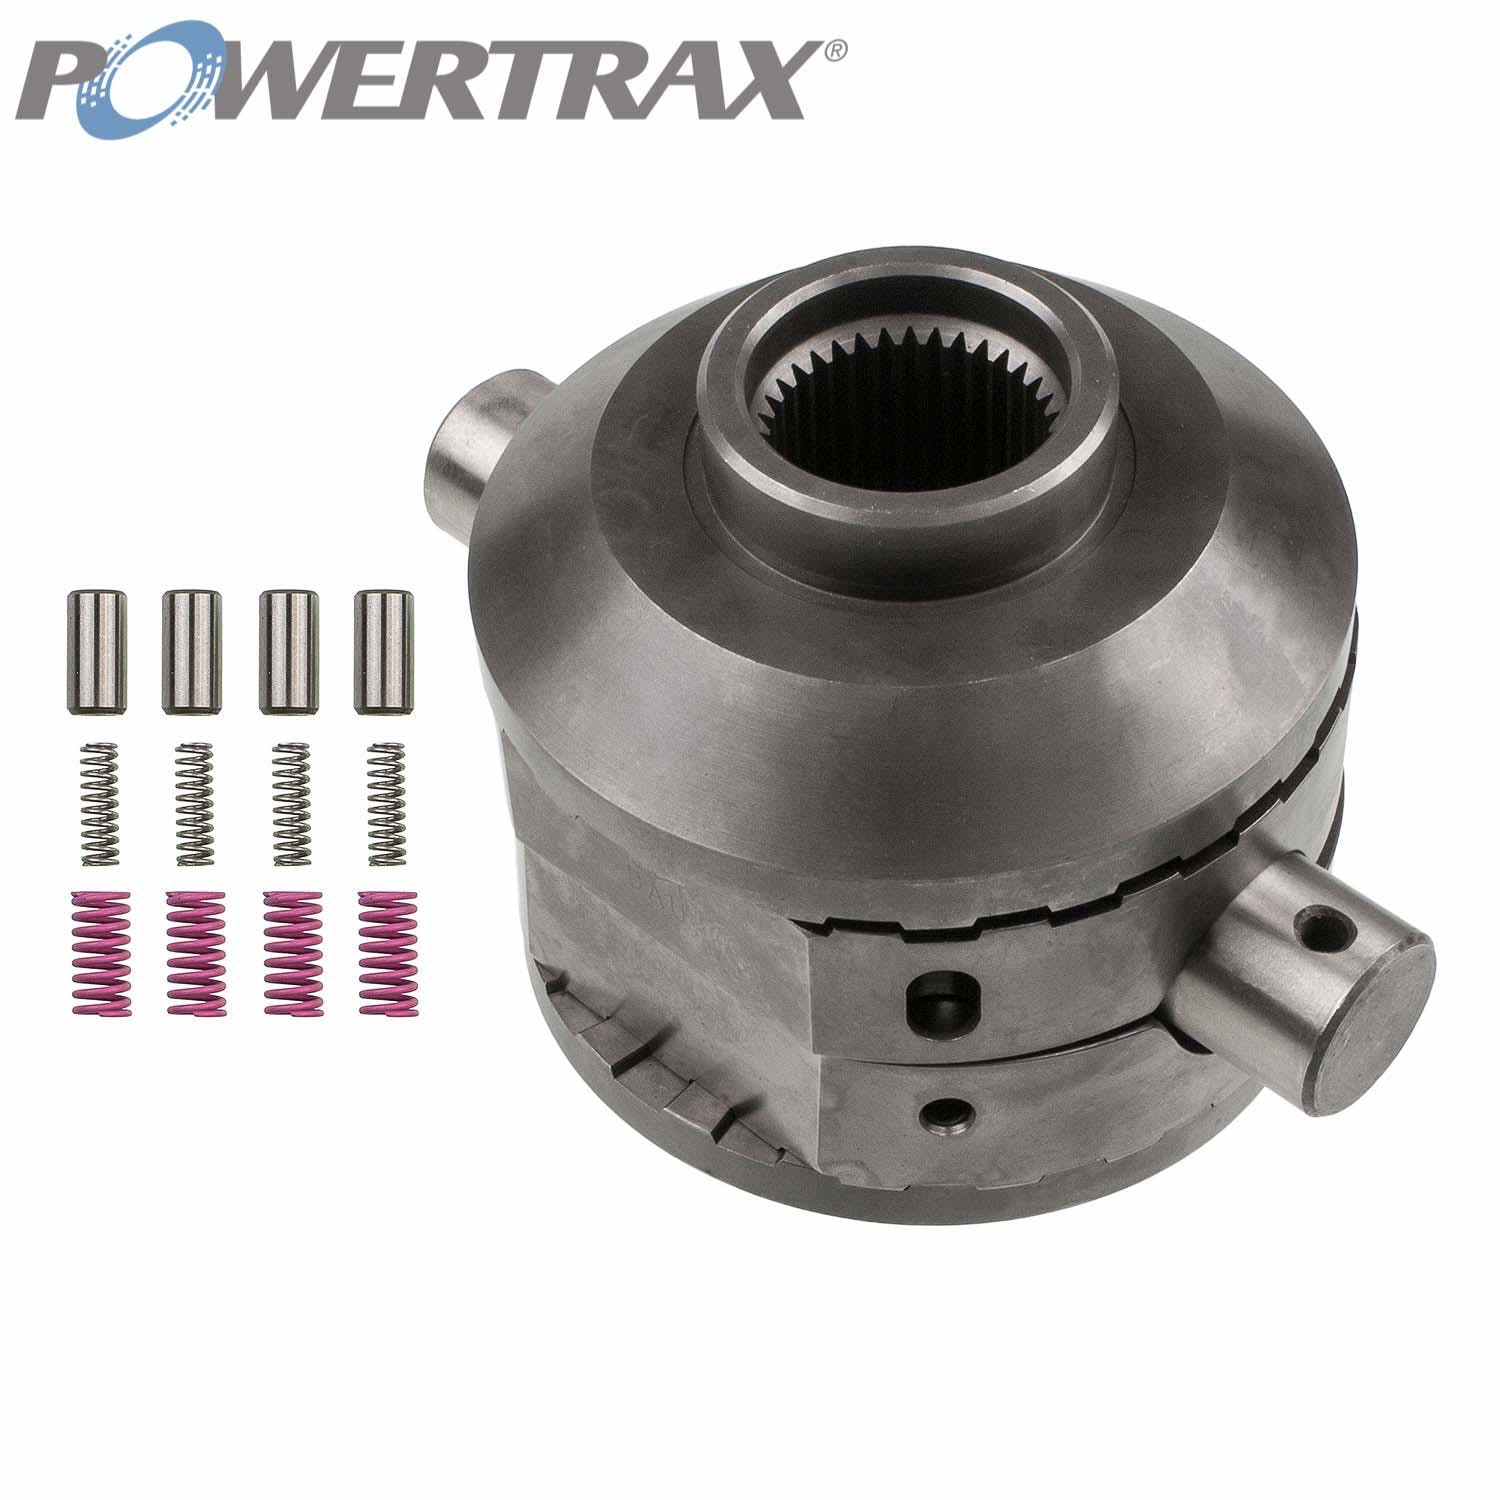 PowerTrax 2710-LR Lock Right Locker